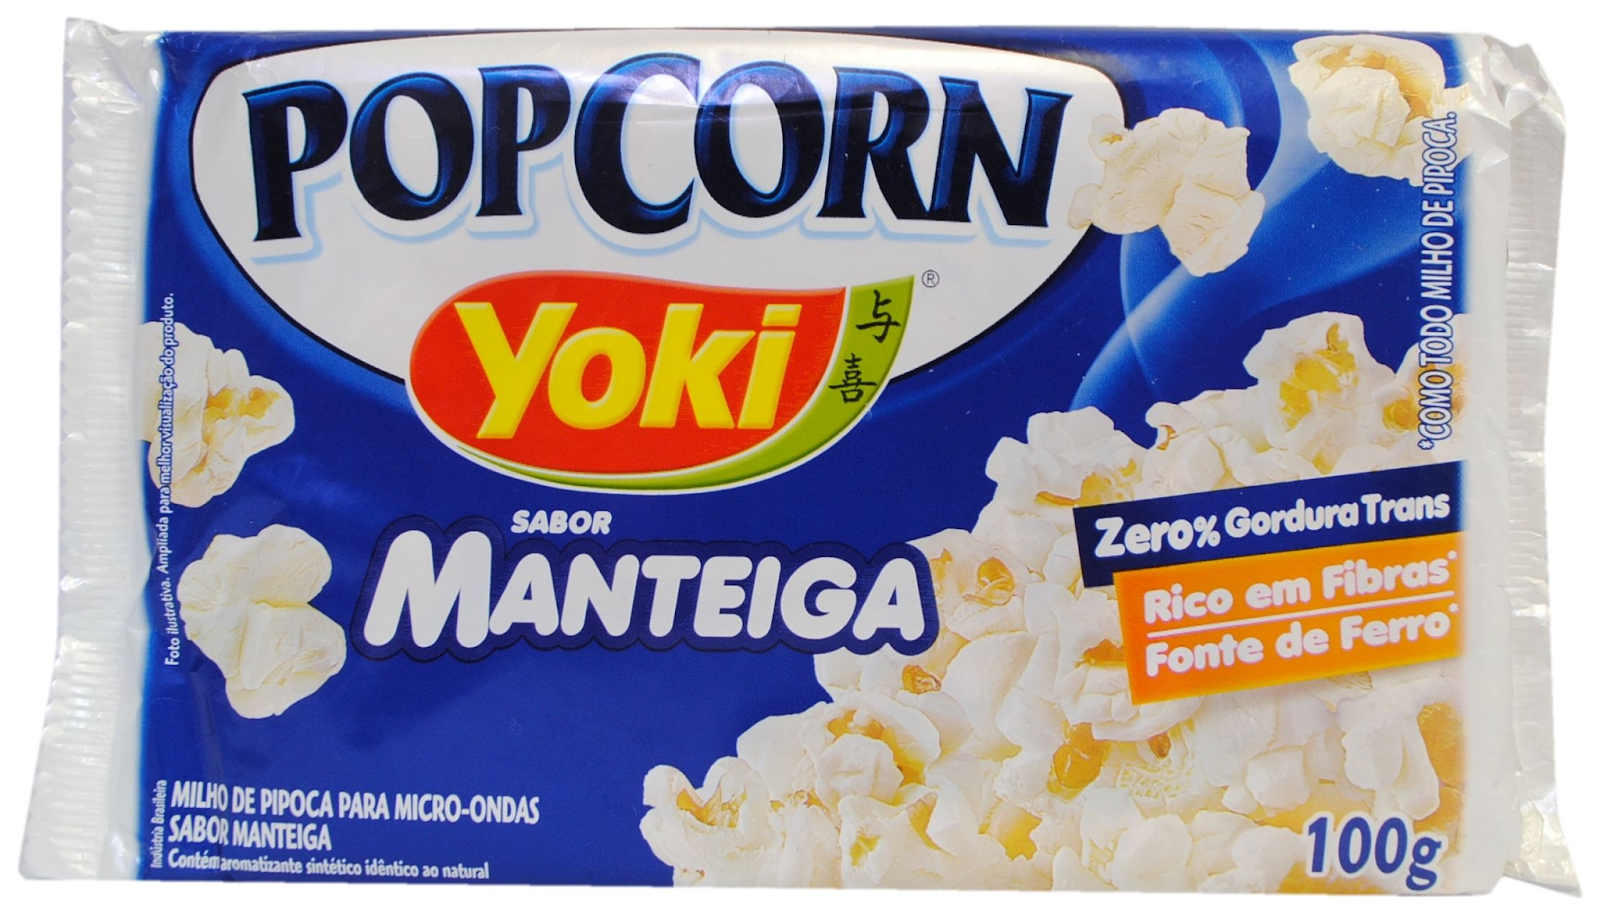 Yoki Popcorn